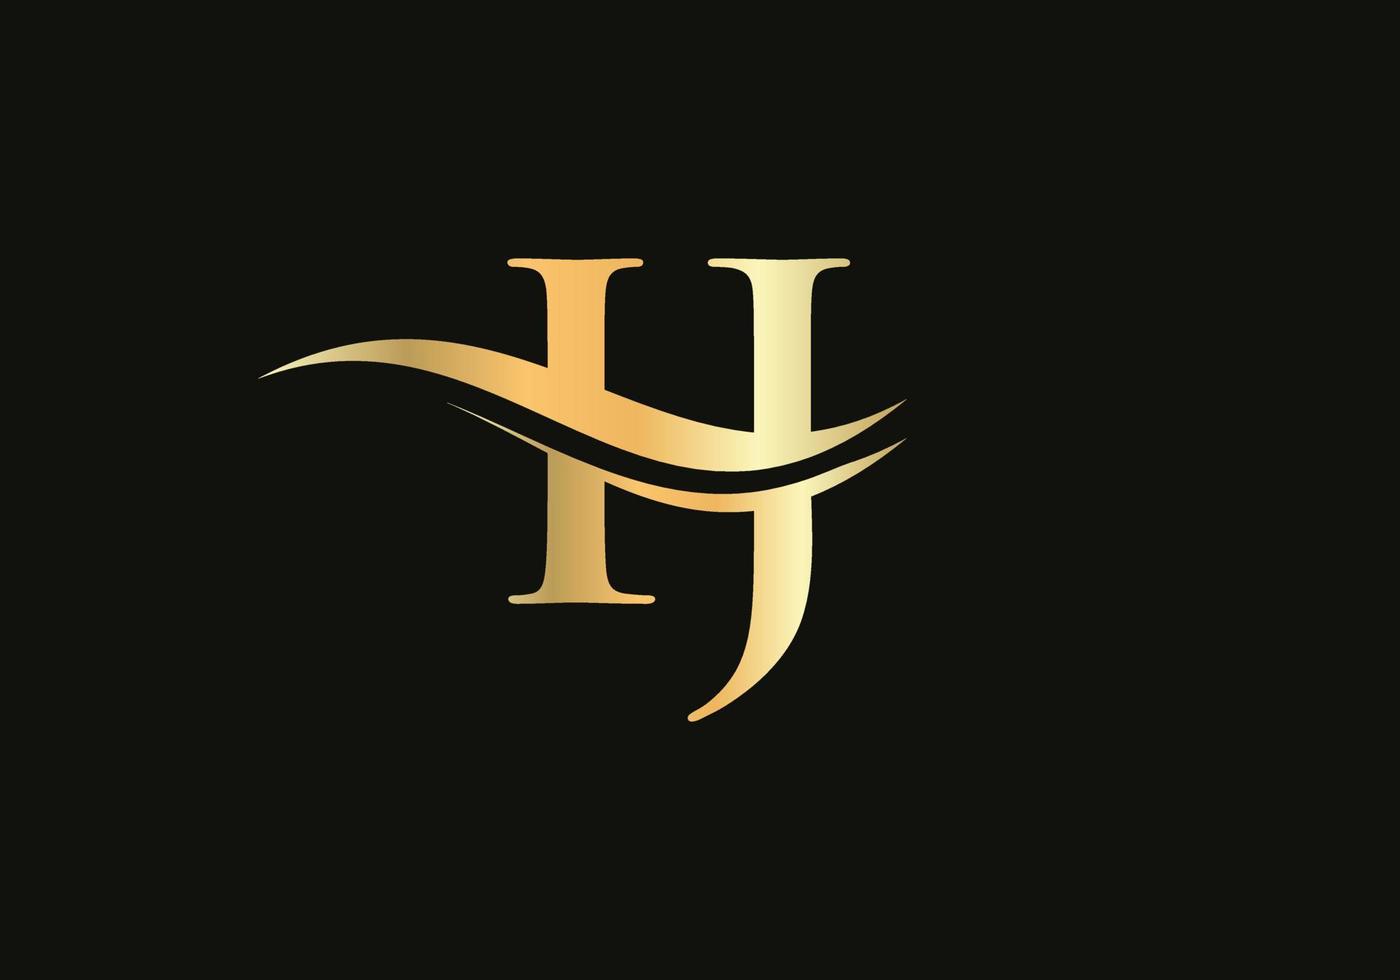 buchstabe ij logo design für geschäfts- und unternehmensidentität. kreativer ij-brief mit luxuskonzept vektor